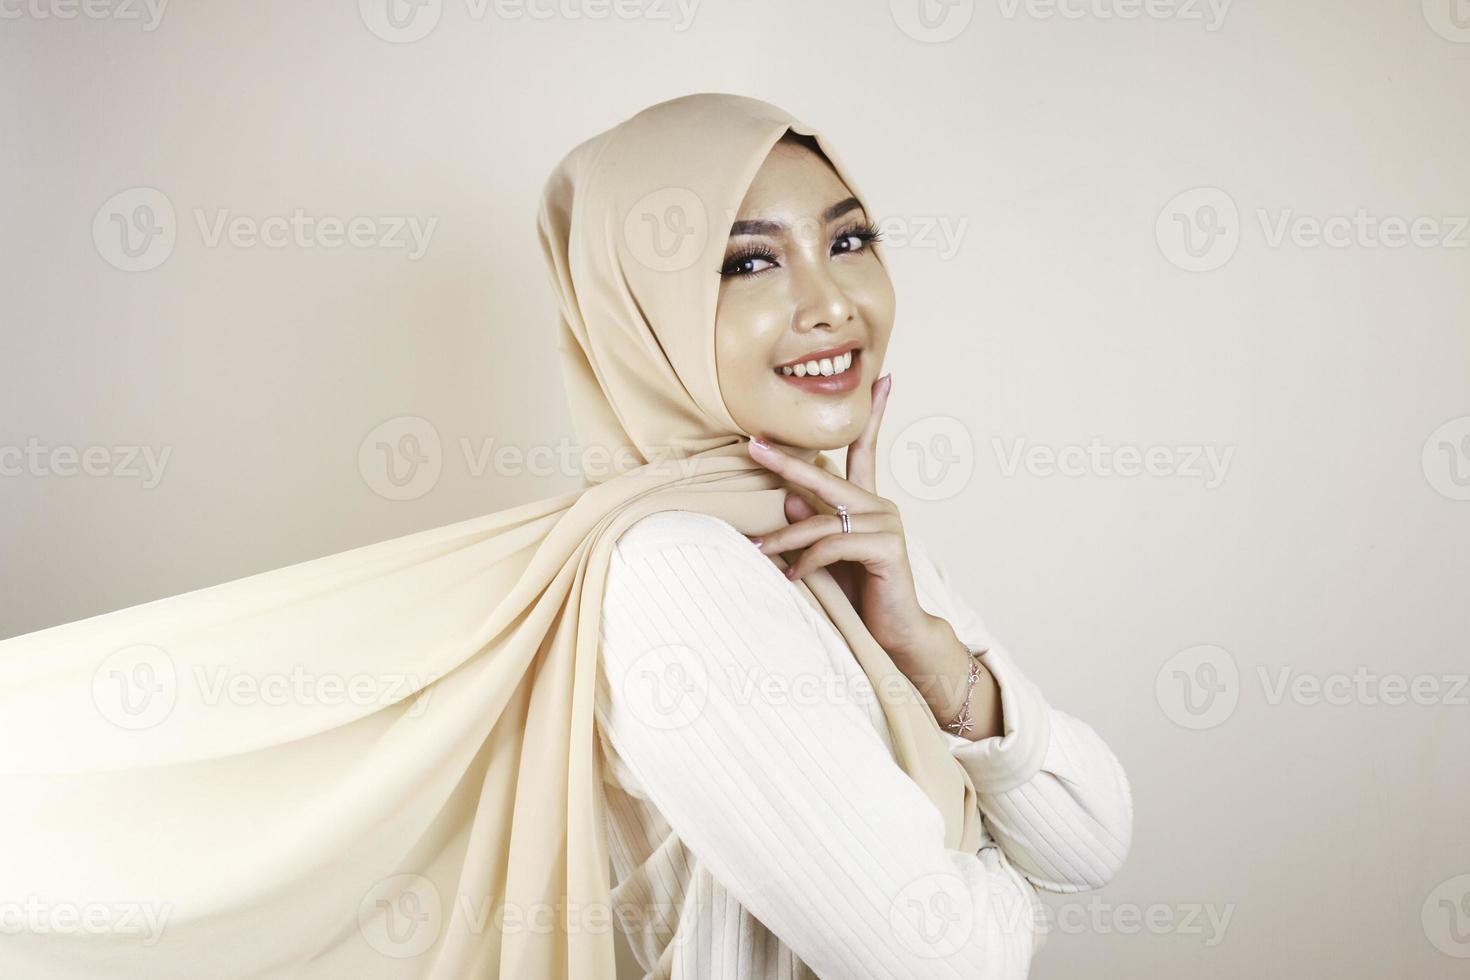 mujer musulmana con ropa tradicional y hiyab aislada de fondo blanco. el hiyab se hace volando de forma creativa. concepto de moda idul fitri e hijab. foto